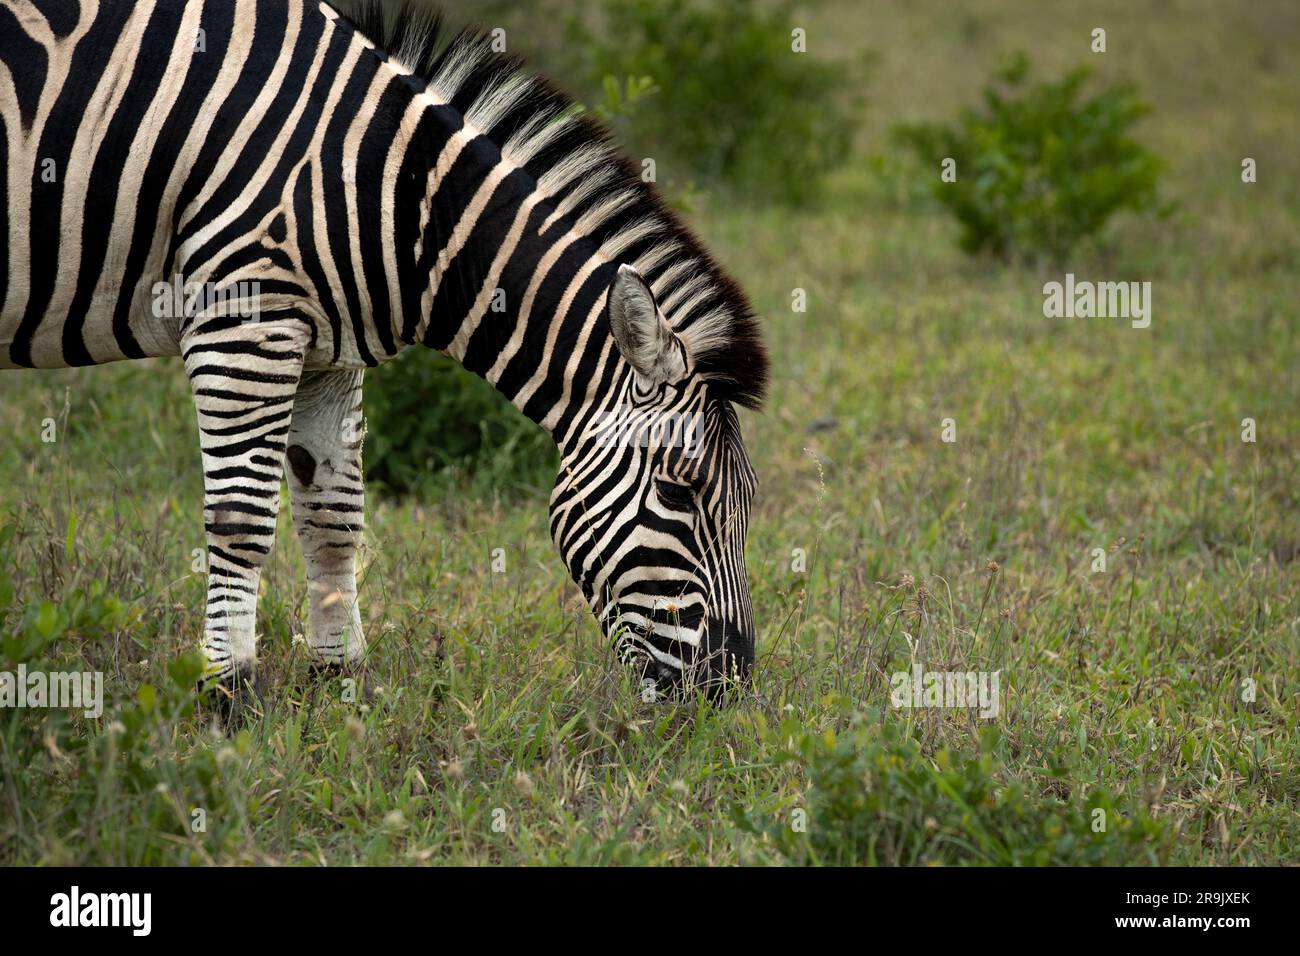 A Zebra, Equus quagga, grazing on grass. Stock Photo